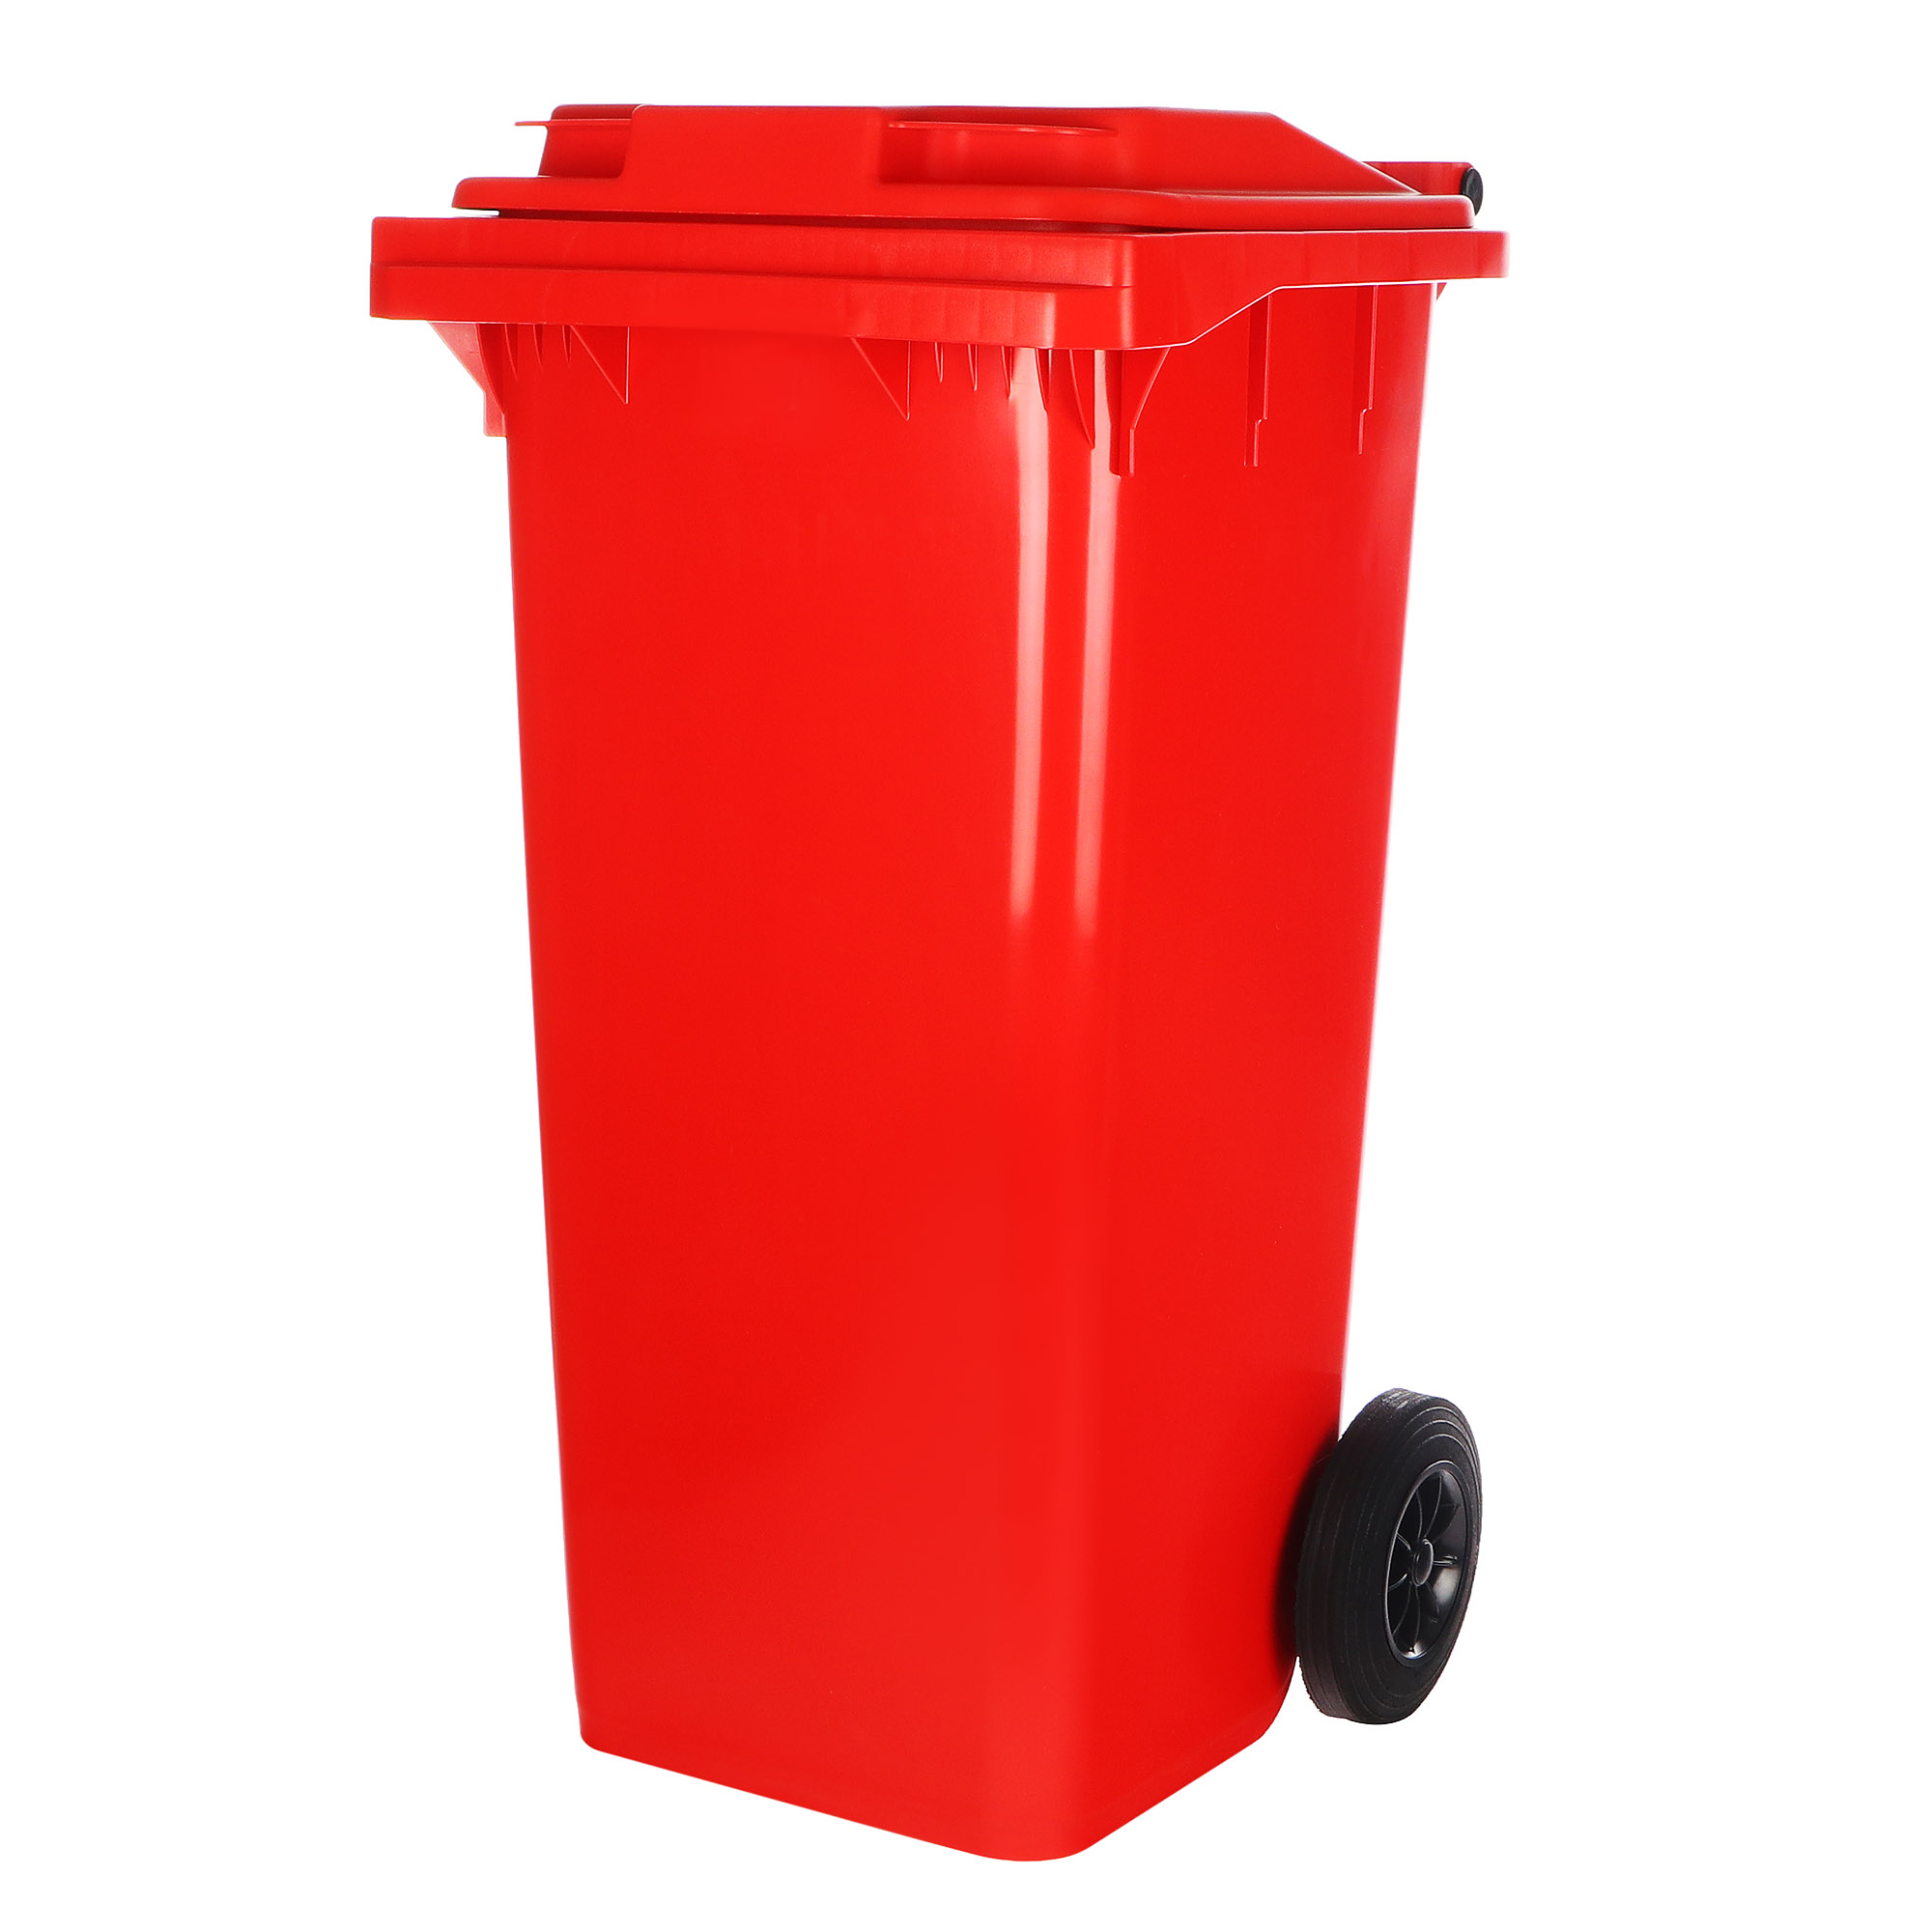 Контейнер мусорный передвижной Ай-пласт 120 л.красный контейнер косточка с мешками для уборки рулон 15 пакетов 29х21 см красный